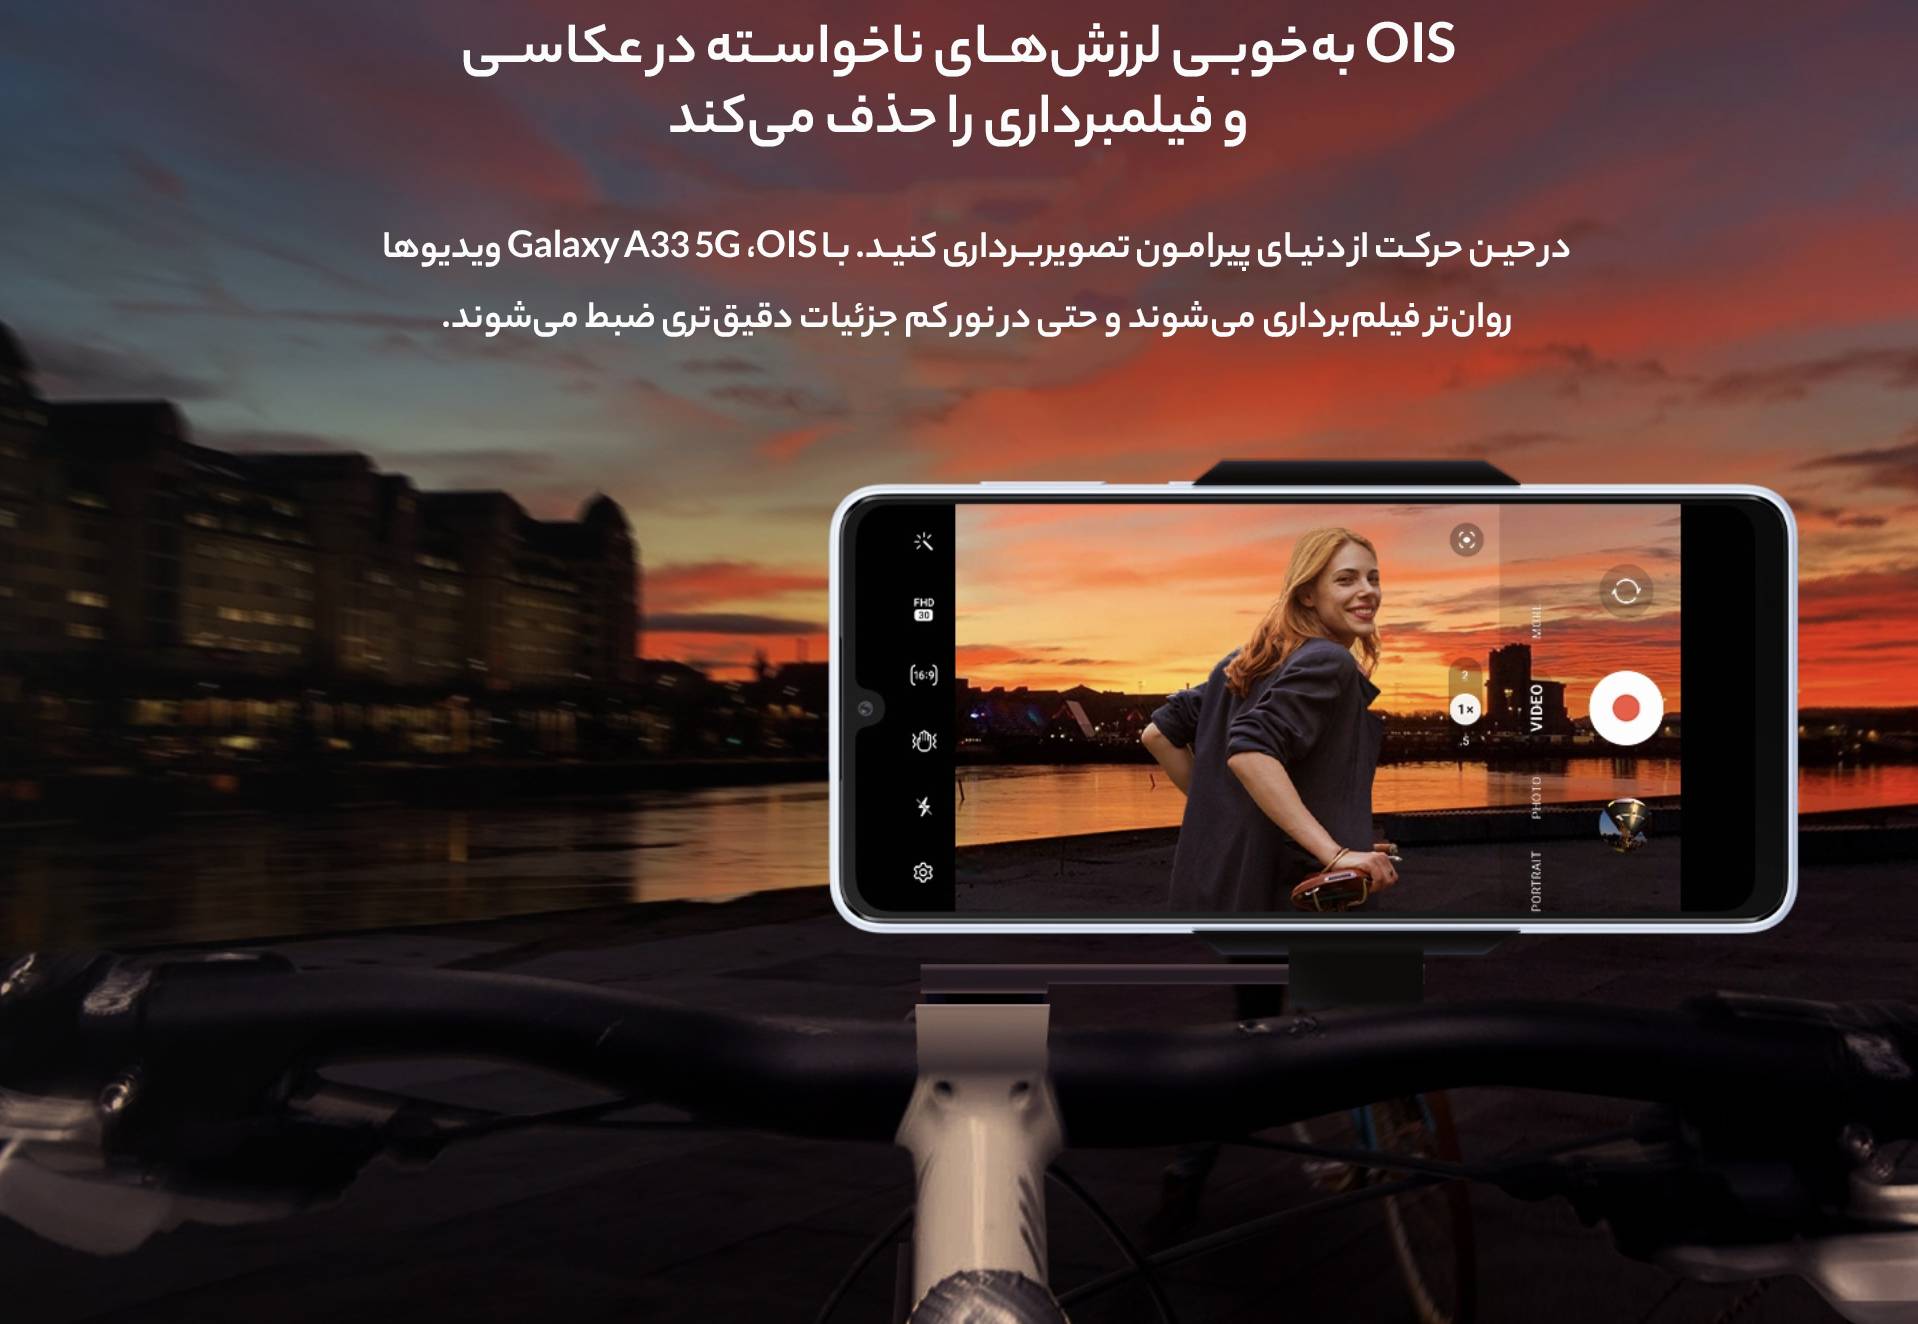 گوشی موبايل سامسونگ مدل Galaxy A33 5G ظرفیت 128 گیگابایت - رم 6 گیگابایت